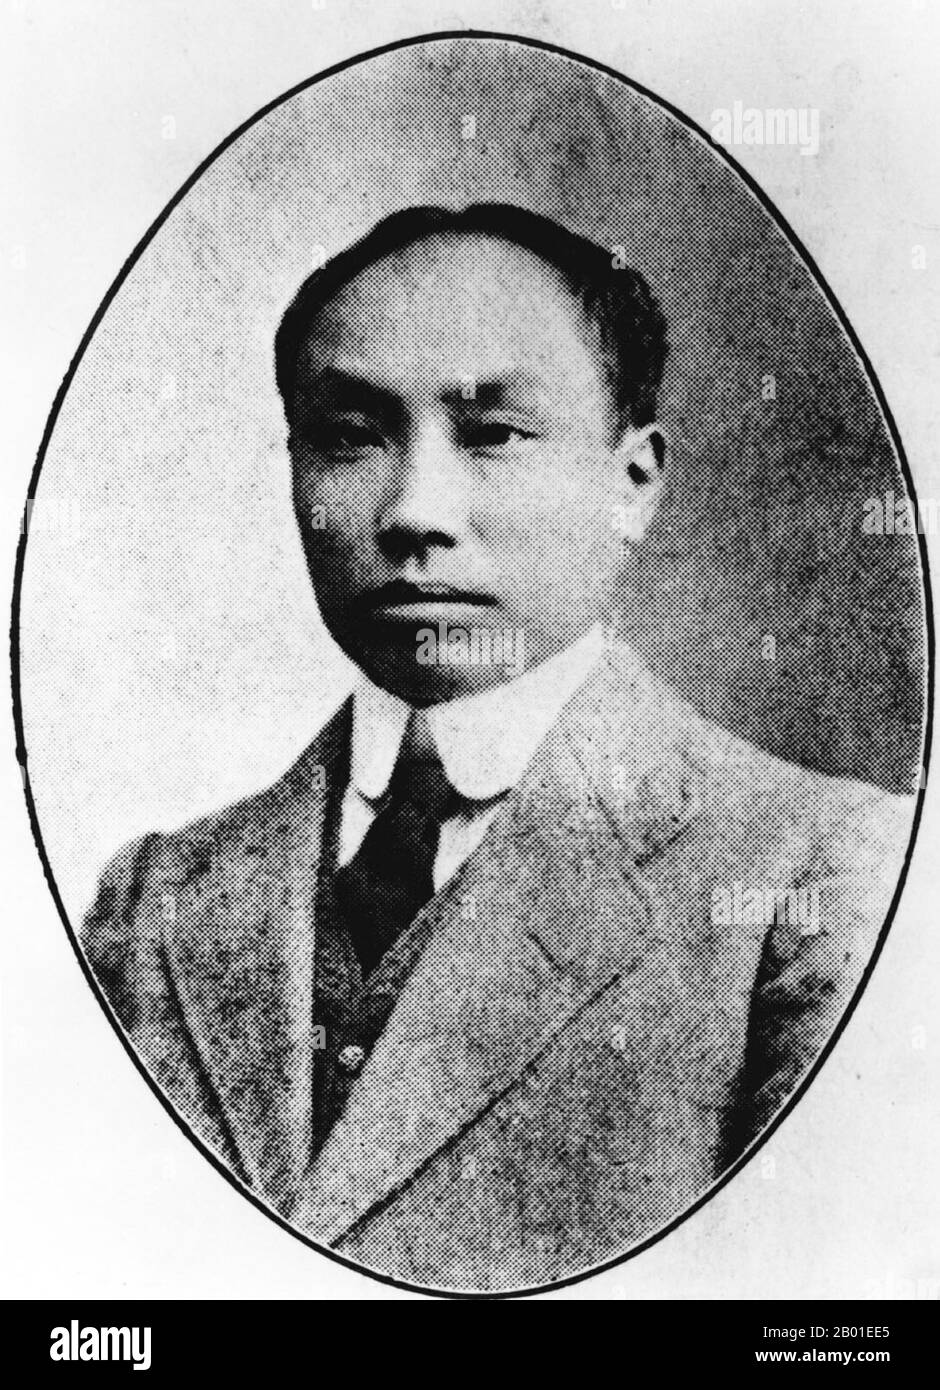 China: Chen Duxiu (8. Oktober 1879 - 27. Mai 1942), führende Persönlichkeit in der Bewegung vom 4. Mai, Mitbegründer der Kommunistischen Partei Chinas, Pädagogen, Philosoph, Politiker, c. 1920er. Chen Duxiu spielte viele verschiedene Rollen in der chinesischen Geschichte. Er war eine führende Figur in der antiimperialen Xinhai-Revolution und der Vierten Bewegung für Wissenschaft und Demokratie im Mai. Zusammen mit Li Dazhao war Chen 1921 Mitbegründer der Kommunistischen Partei Chinas. Er war ihr erster Generalsekretär. Chen war Pädagogen, Philosoph und Politiker. Seine Heimat war in Anqing (安慶), Anhui. Stockfoto